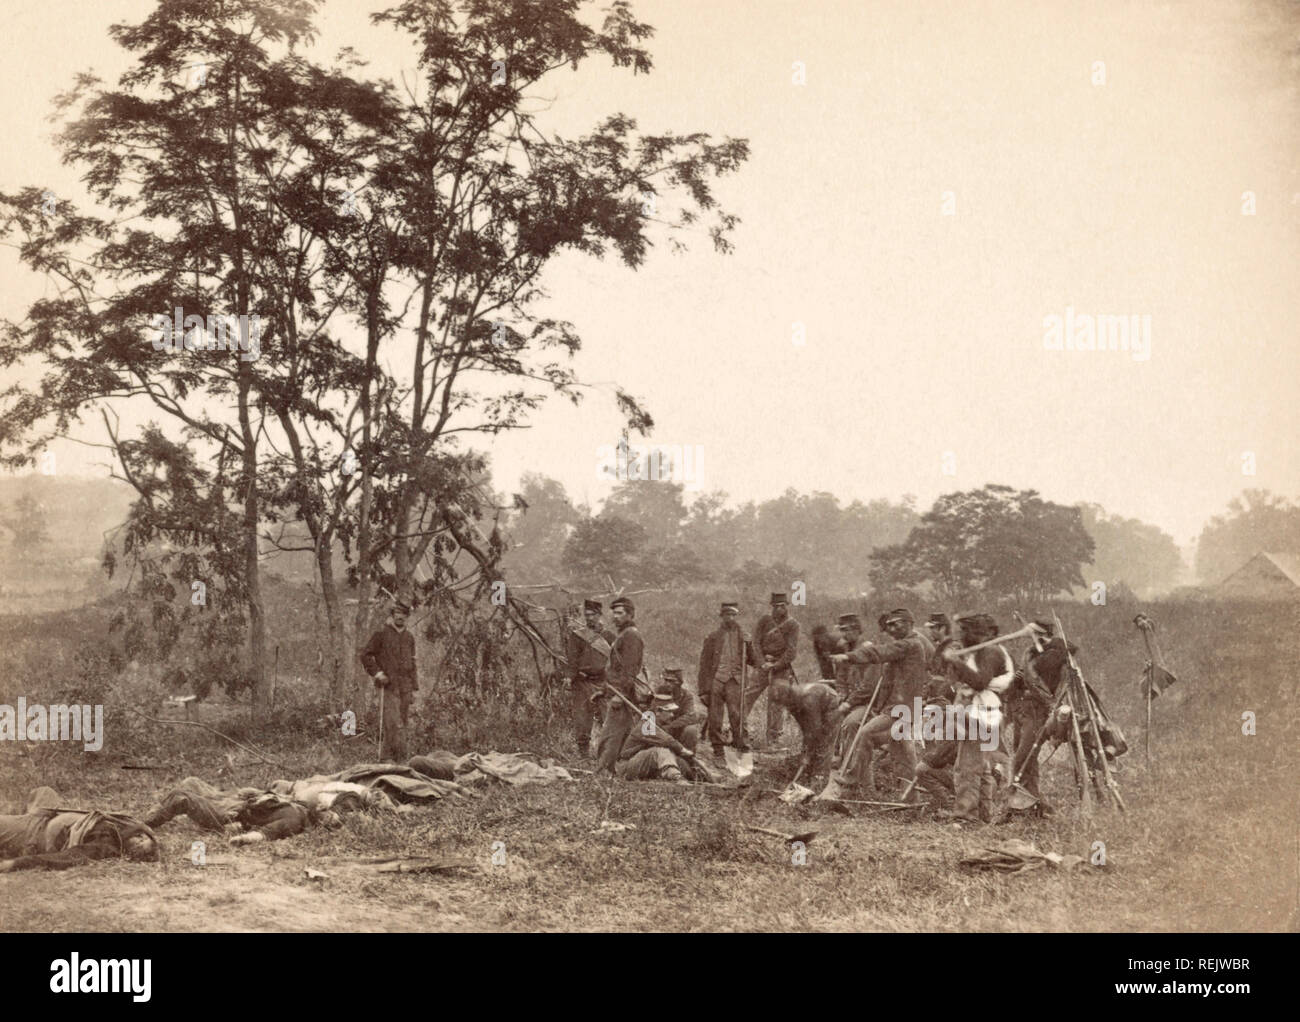 Les soldats de l'Union, debout près de la corps des soldats confédérés morts en attendant l'enfouissement, Bataille d'Antietam, Antietam, Maryland, USA, Alexander Gardner, le 19 septembre 1862 Banque D'Images